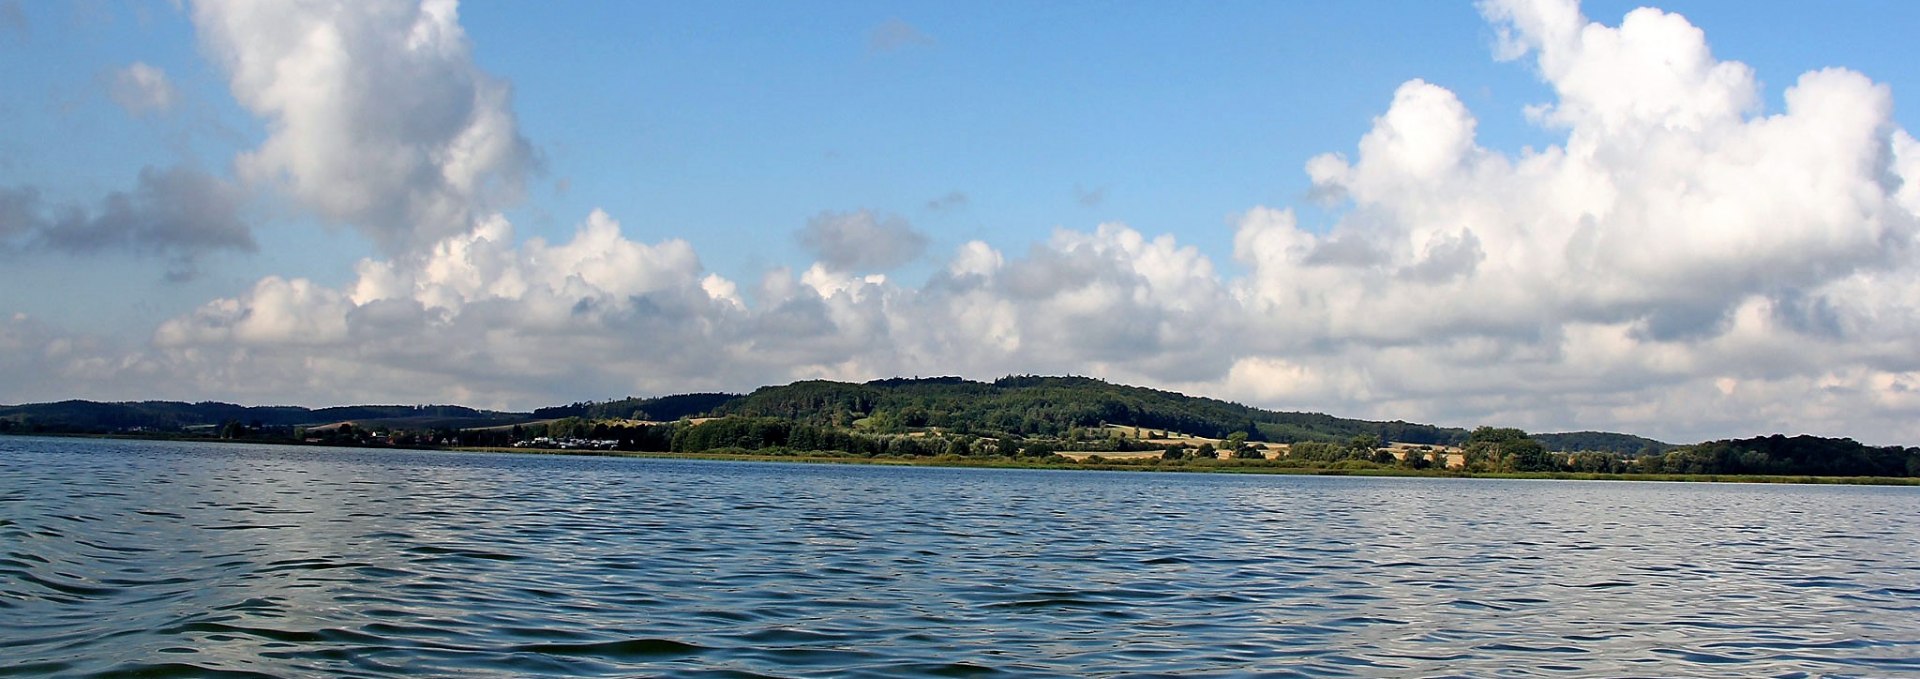 Der Kummerower See ist der viertgrößte See Mecklenburg-Vorpommerns, © Mario Bolinski